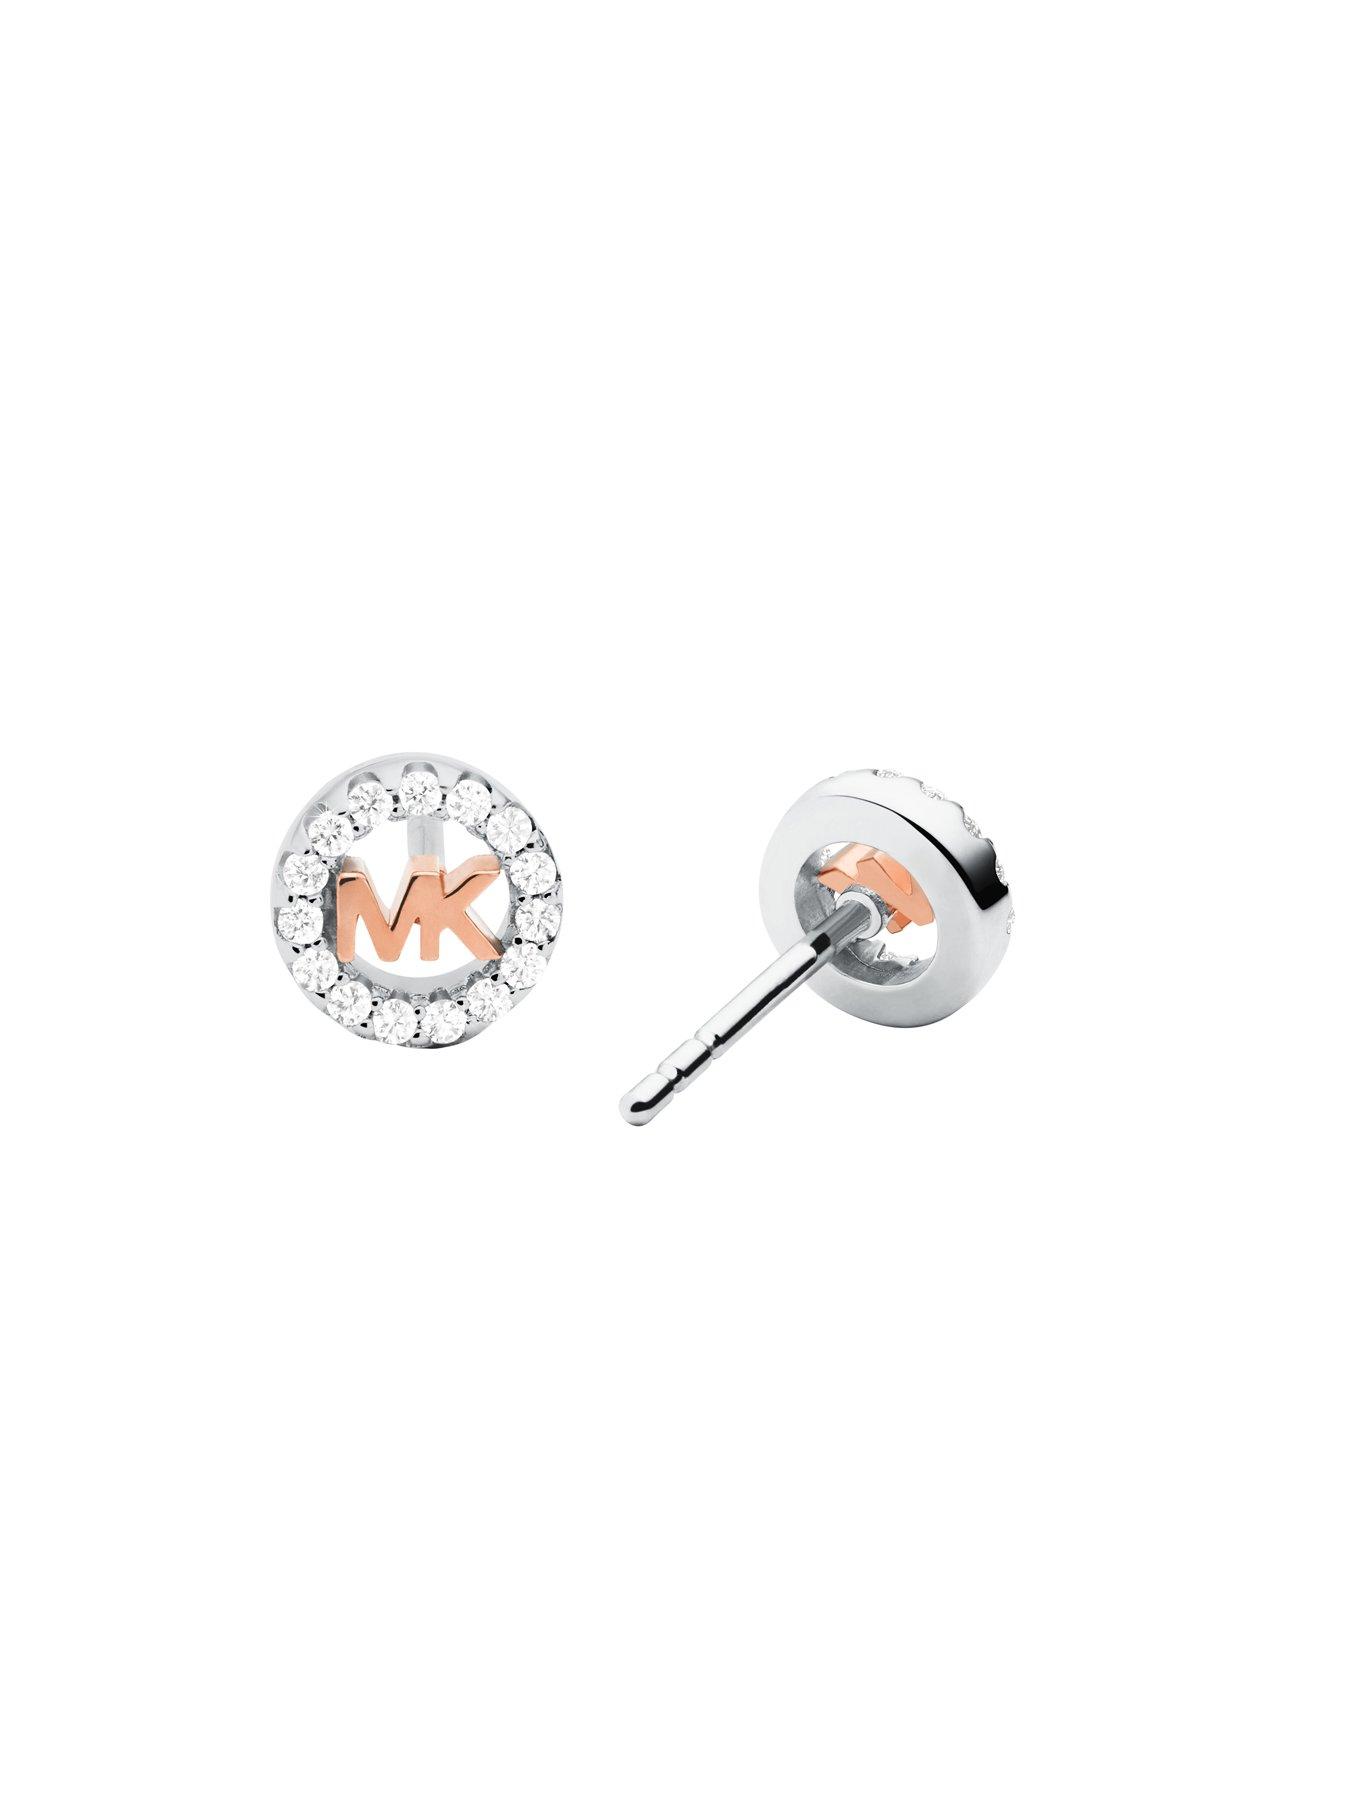  Michael Kors Premium Sterling Silver Ladies Earring